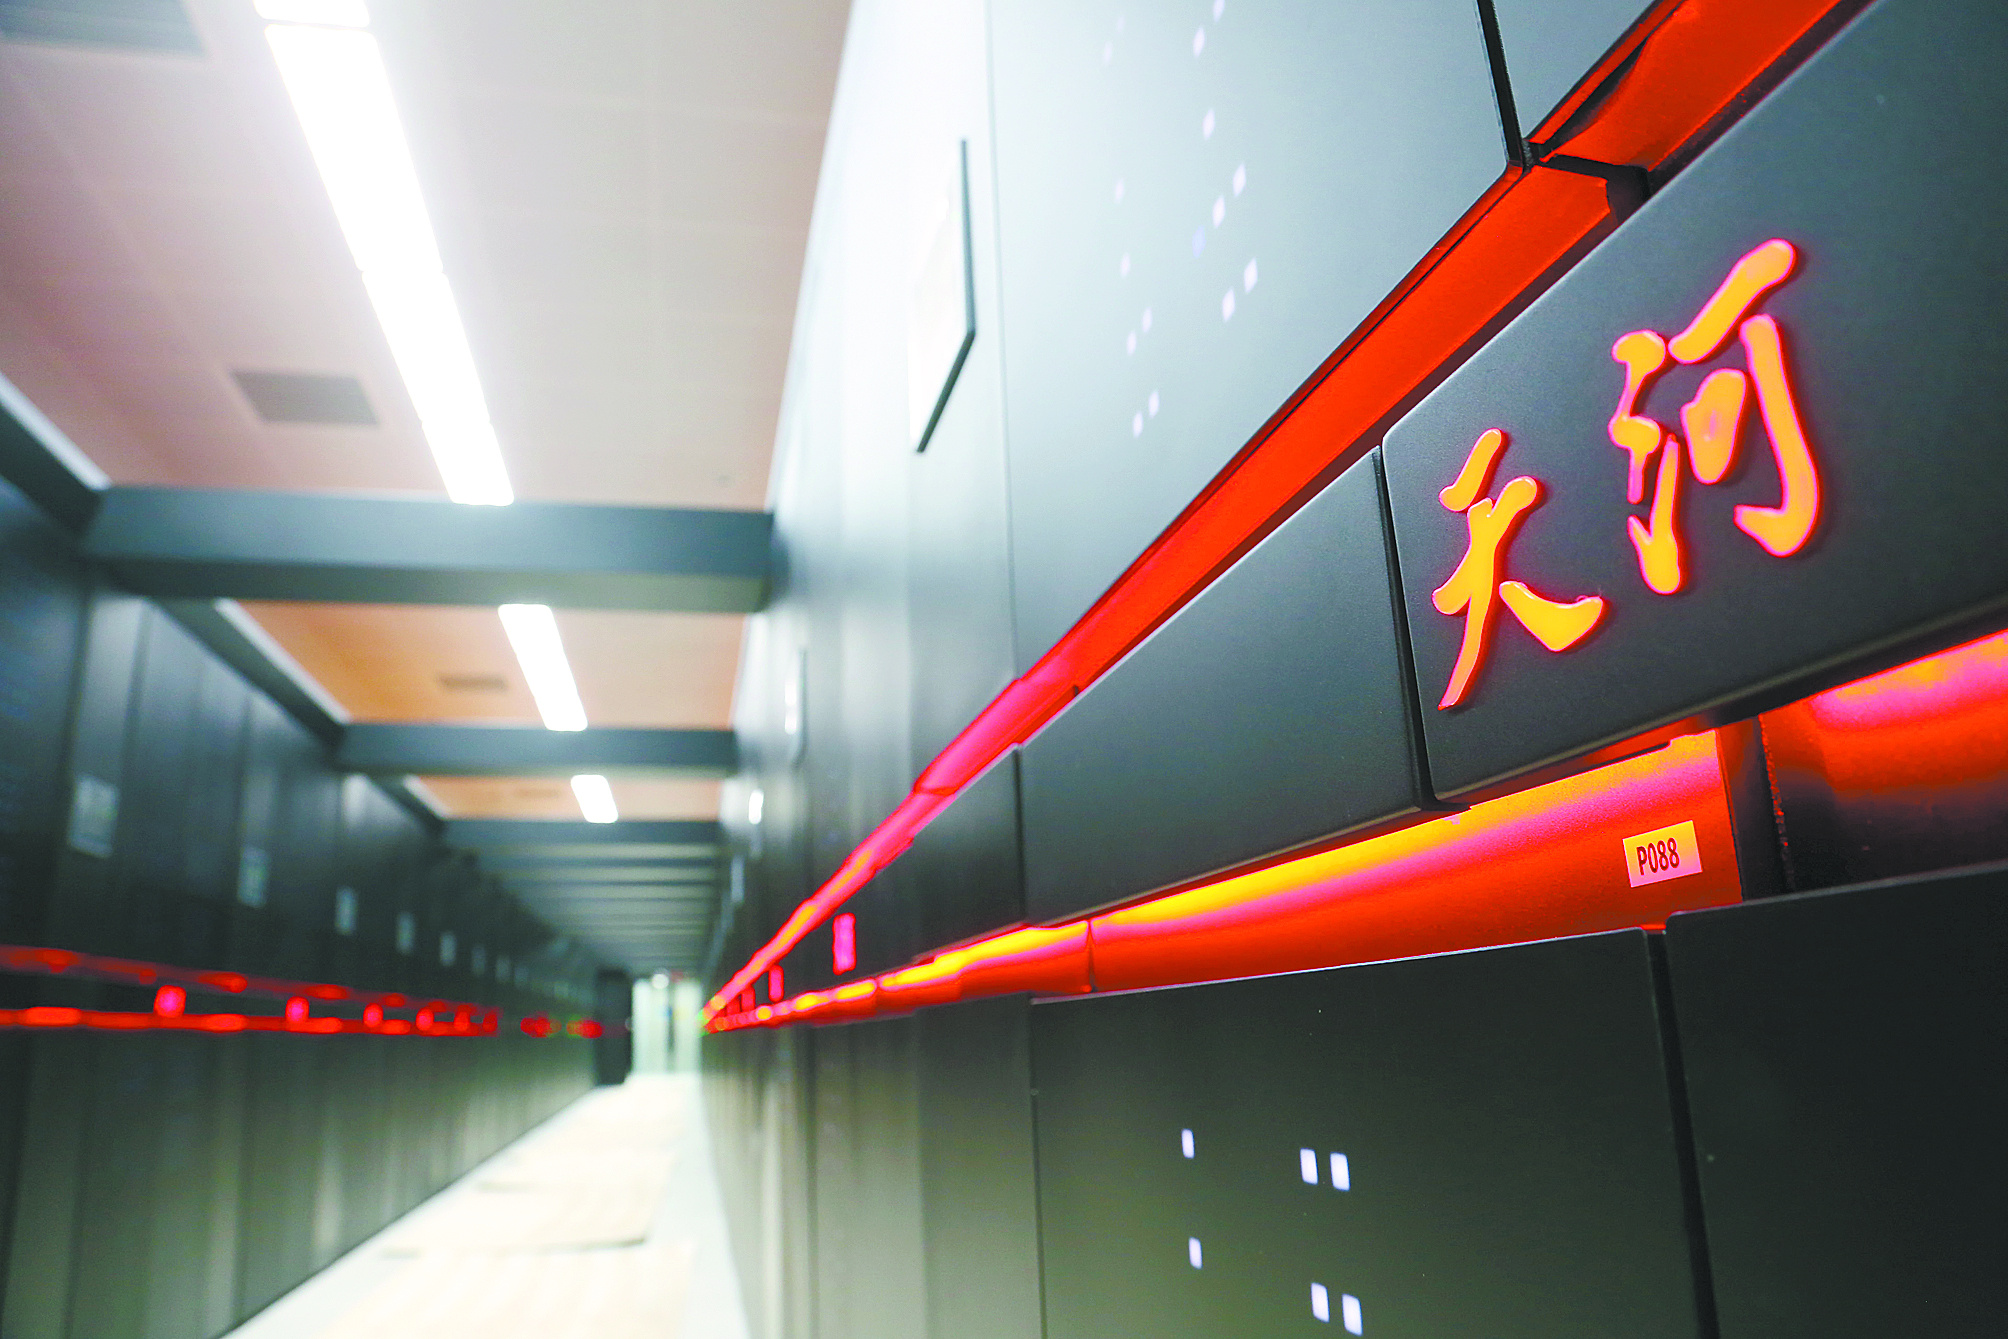 坐落于超算广州中心的天河二号超级计算机